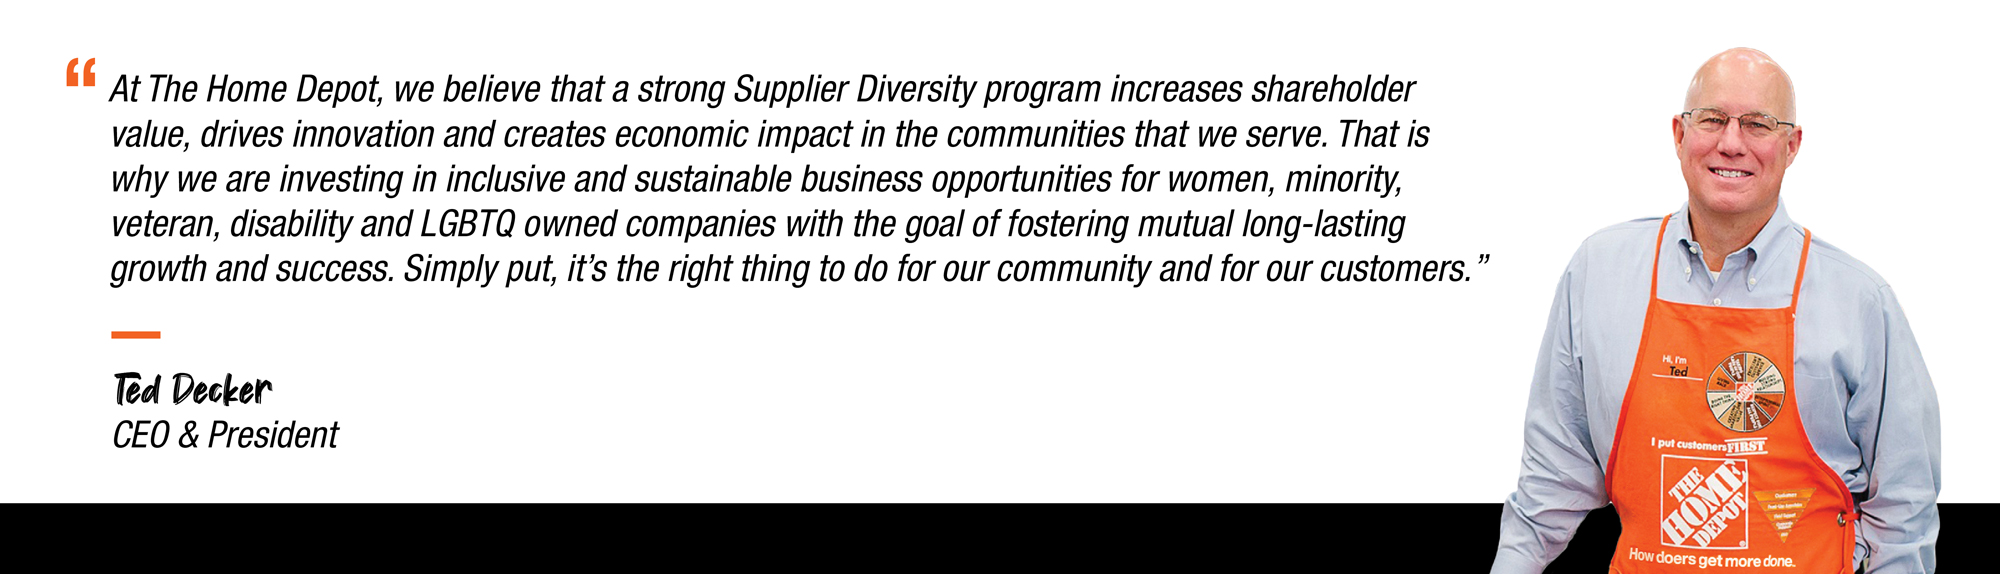 CEO Supplier Diversity Statement